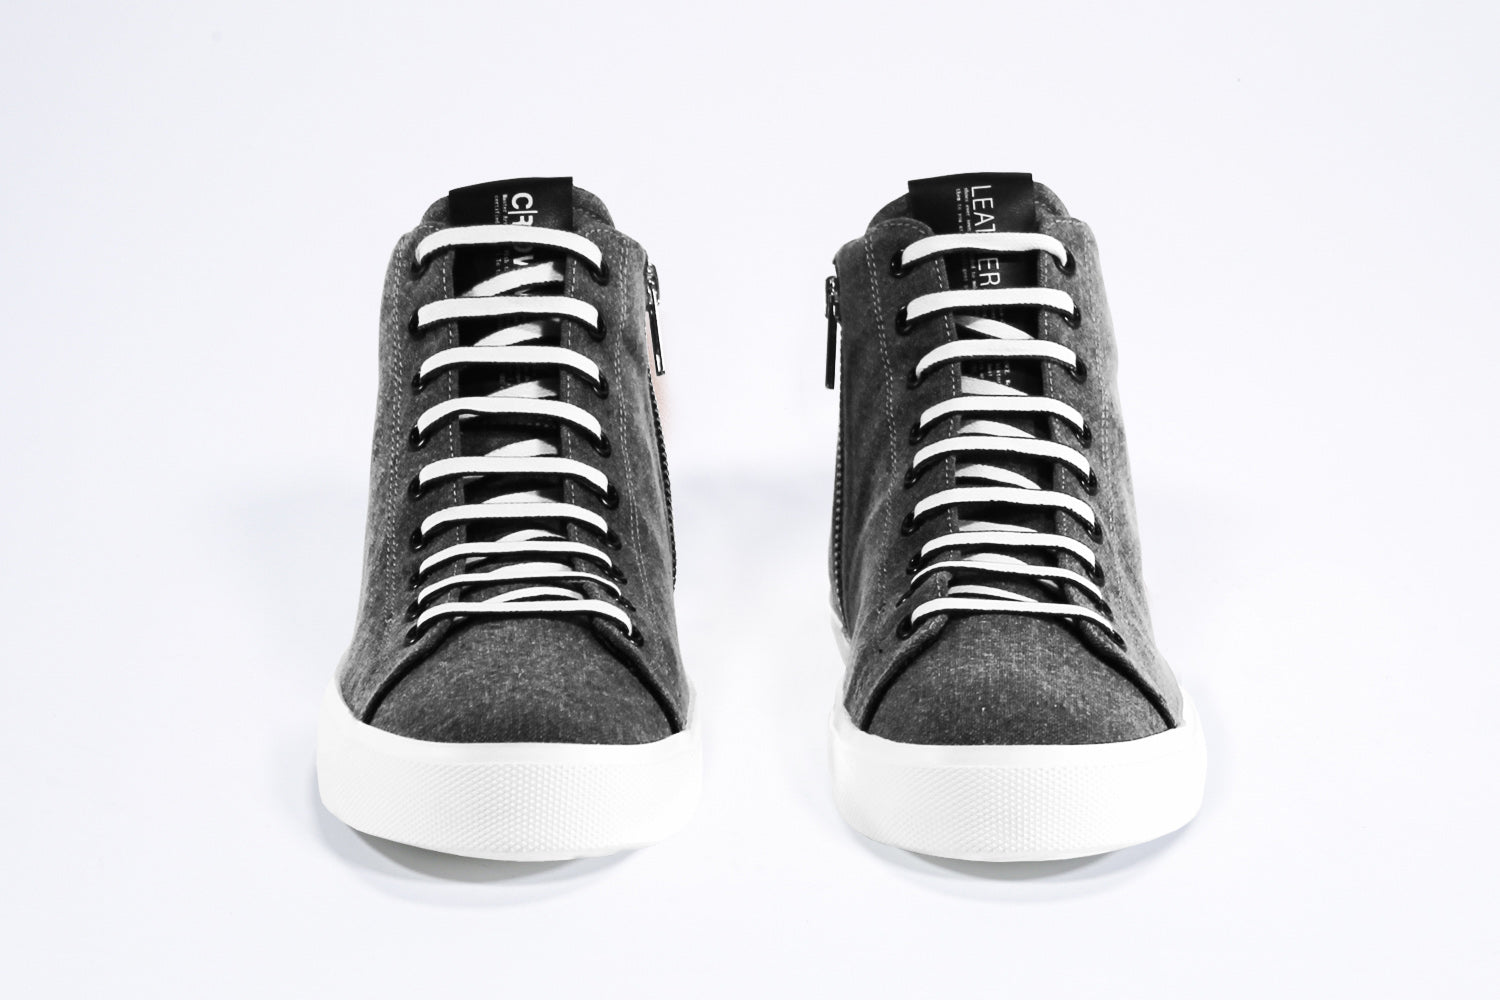 Vista frontale del modello mid top sneaker con tomaia in tela e pelle nera, zip interna e suola bianca.